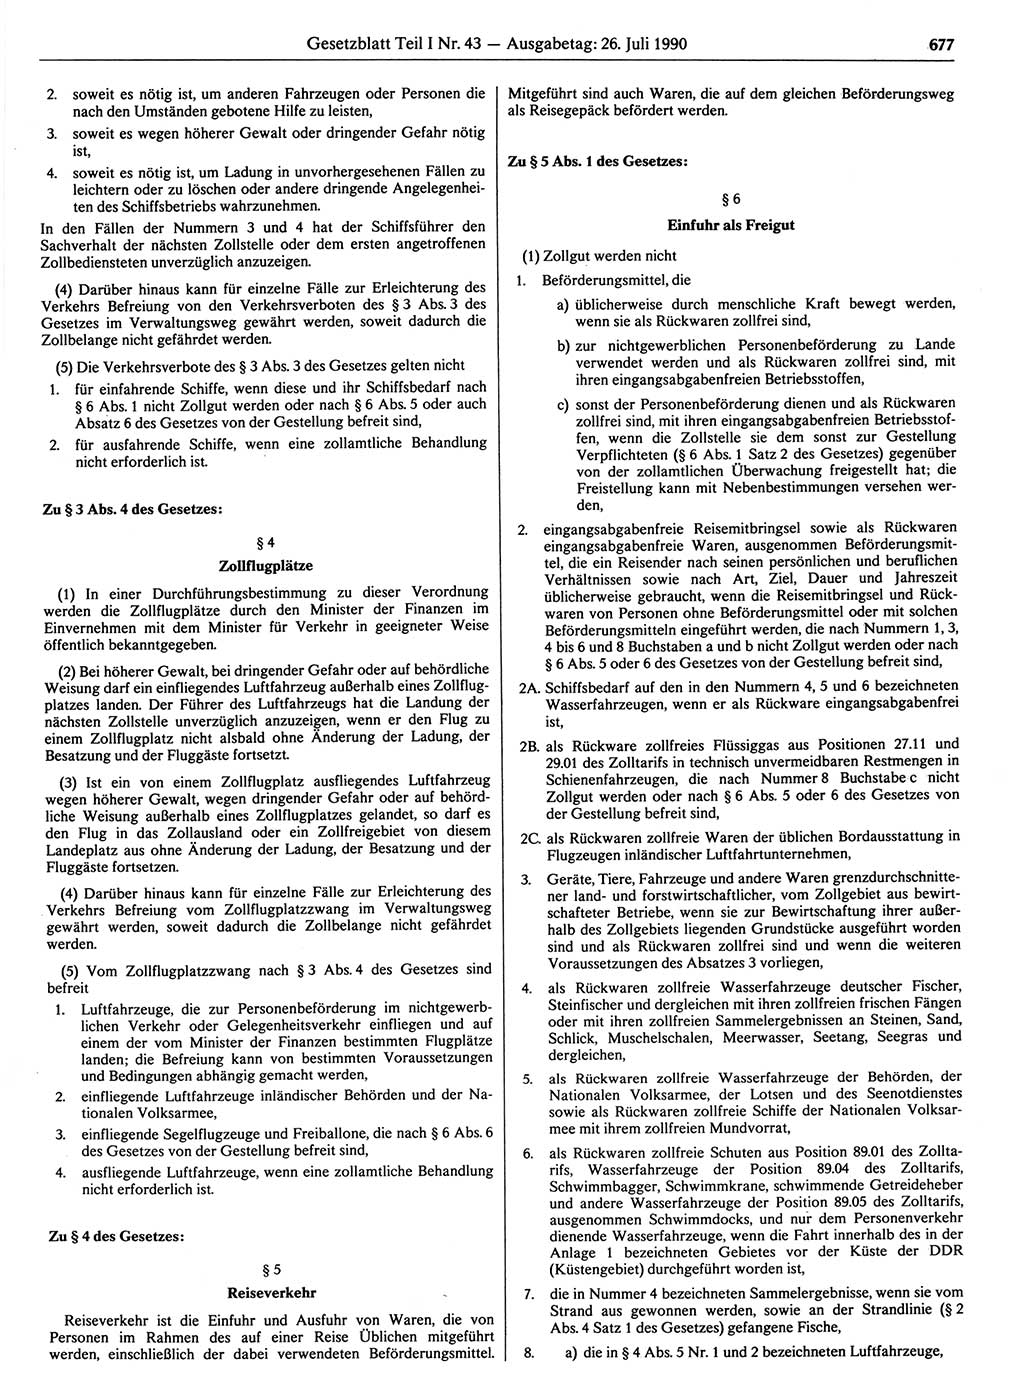 Gesetzblatt (GBl.) der Deutschen Demokratischen Republik (DDR) Teil Ⅰ 1990, Seite 677 (GBl. DDR Ⅰ 1990, S. 677)